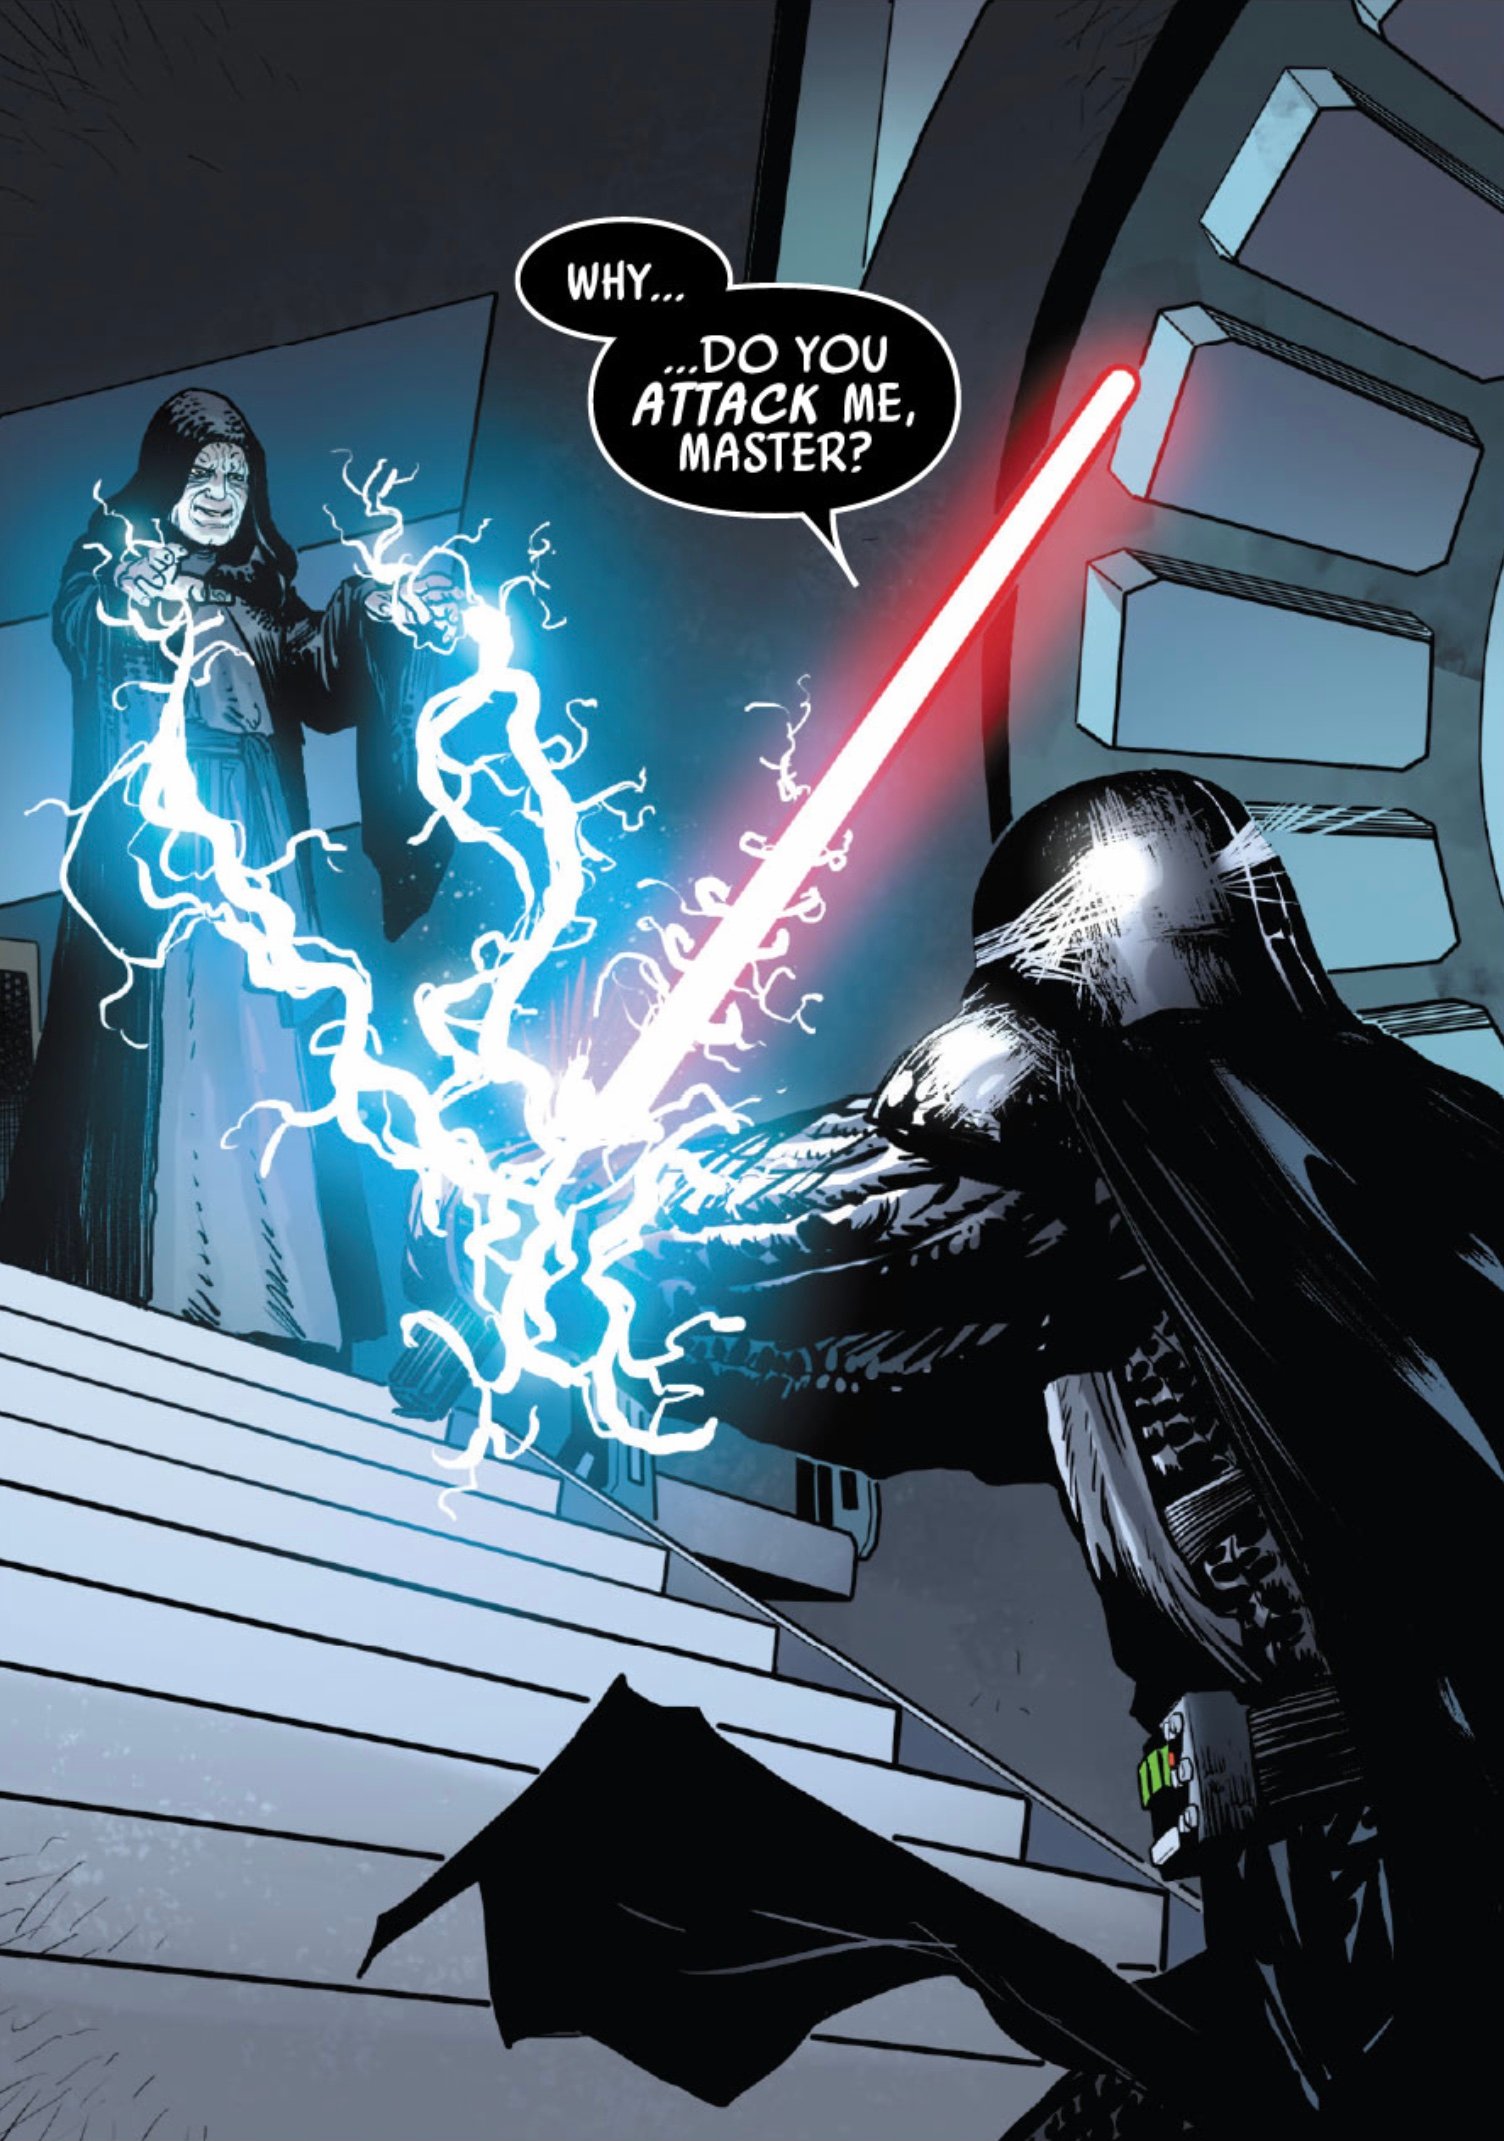 Star Wars Darth Vader #6 2020